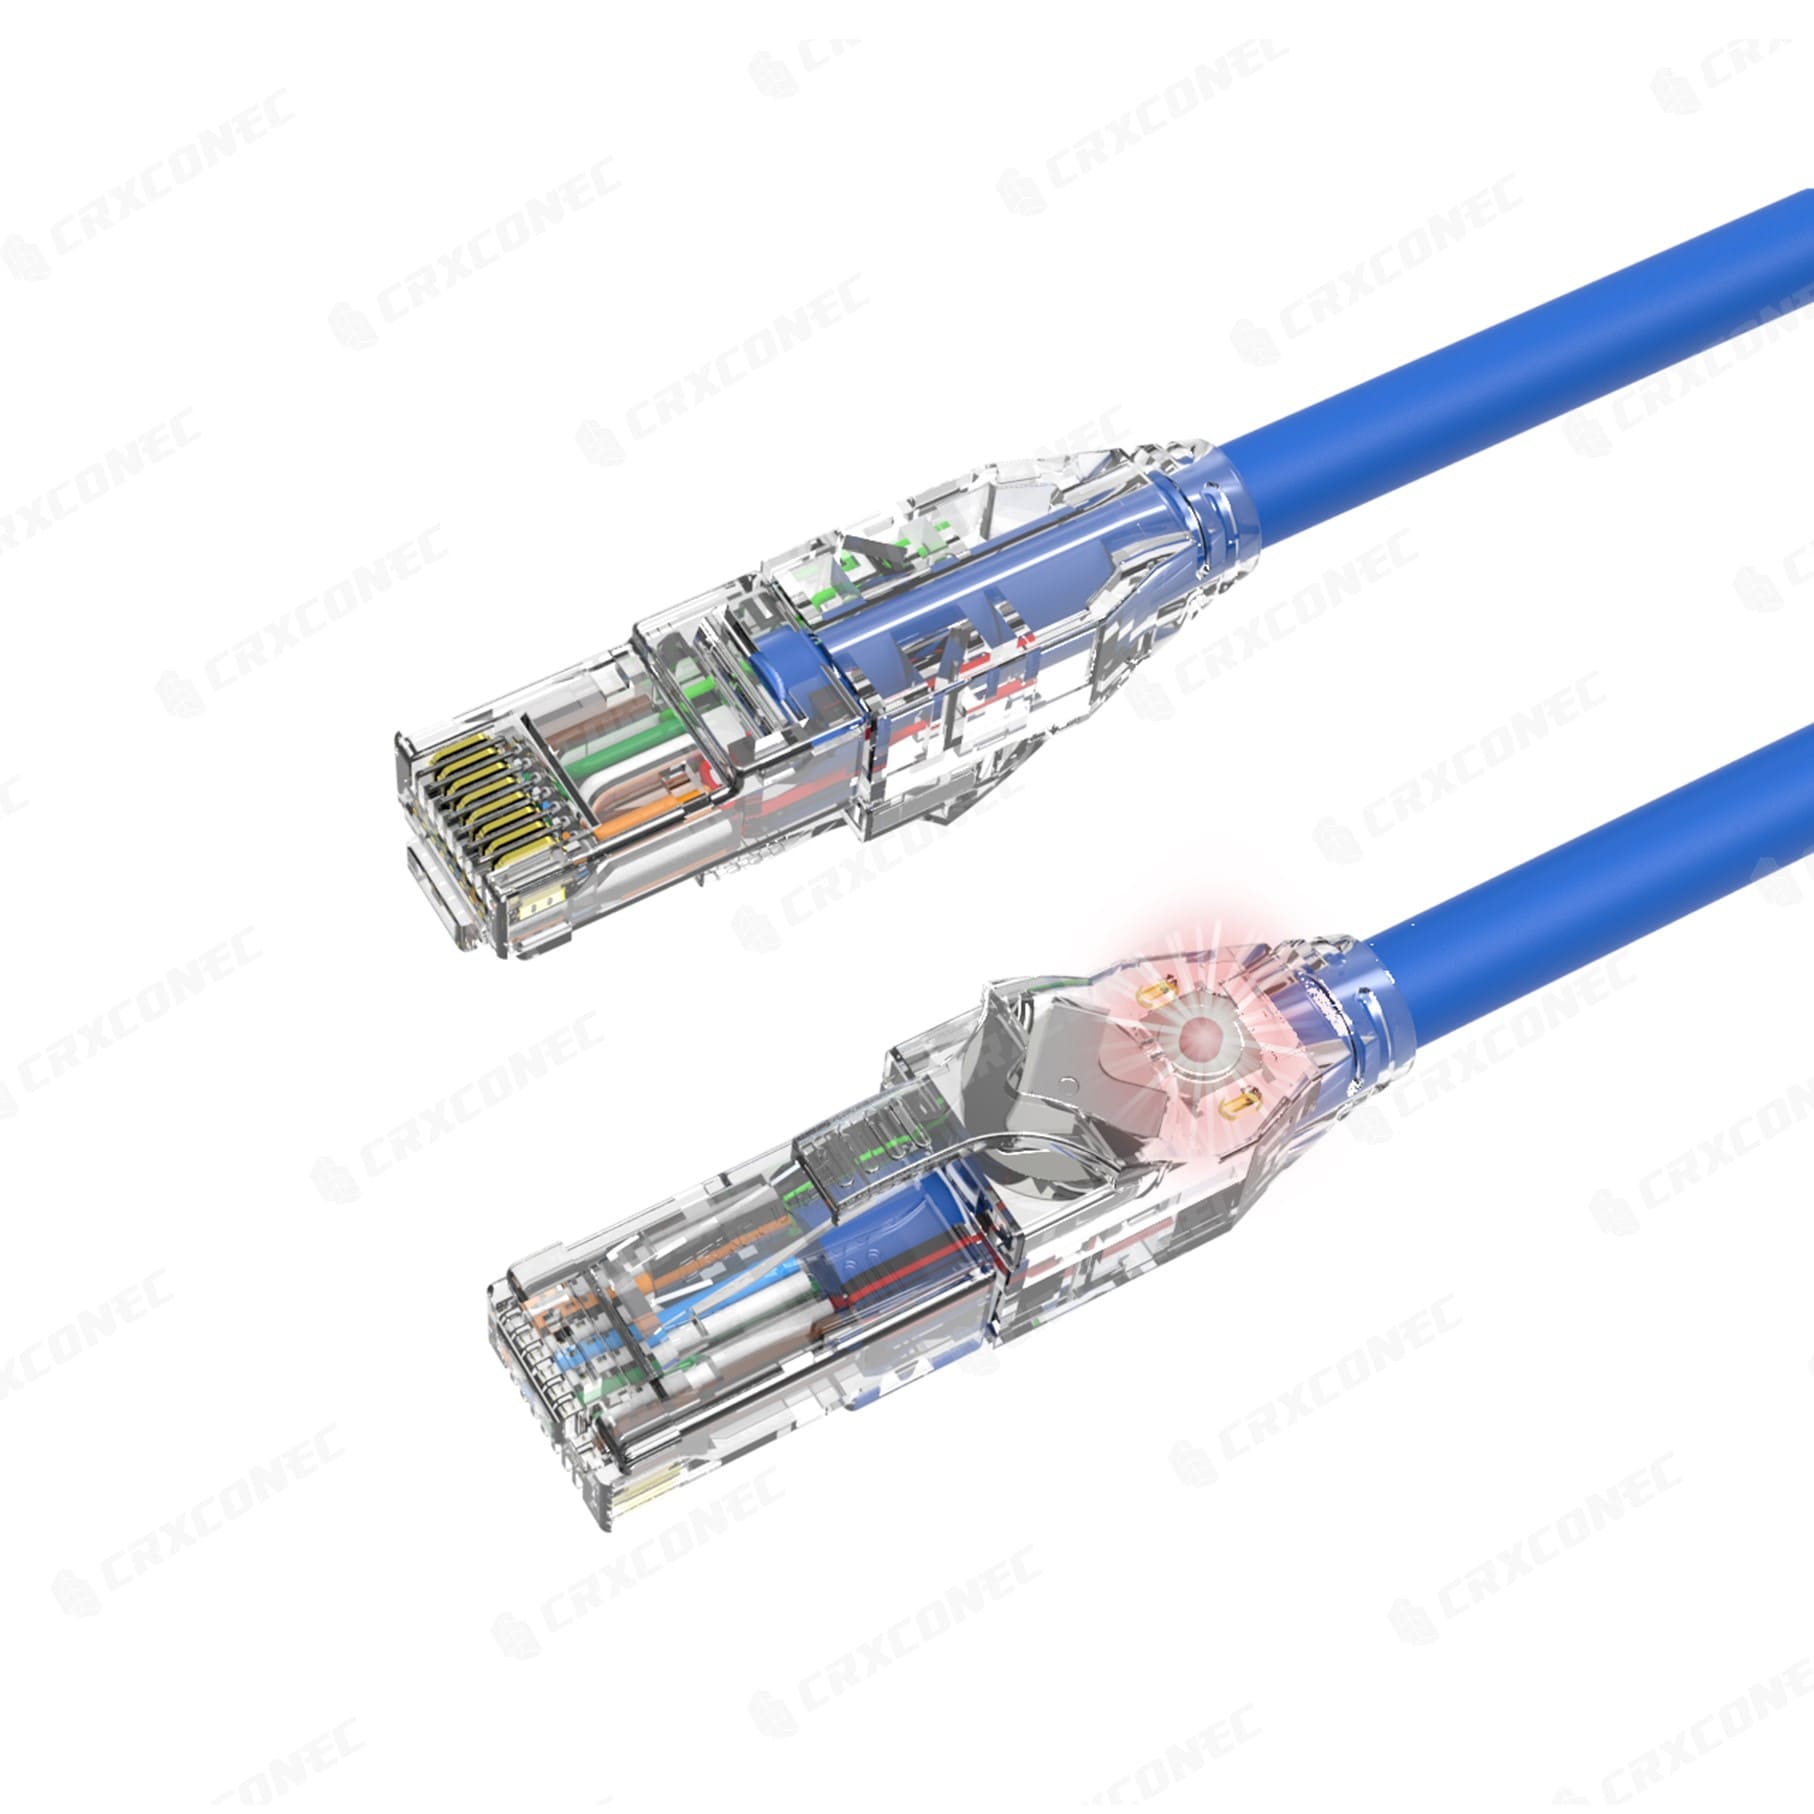 fuego ira Retocar Cable de conexión Cat6 UTP Diseño LED Cable de conexión rastreable |  Fabricante personalizado de productos de cableado de fibra óptica y cobre |  CRXCONEC